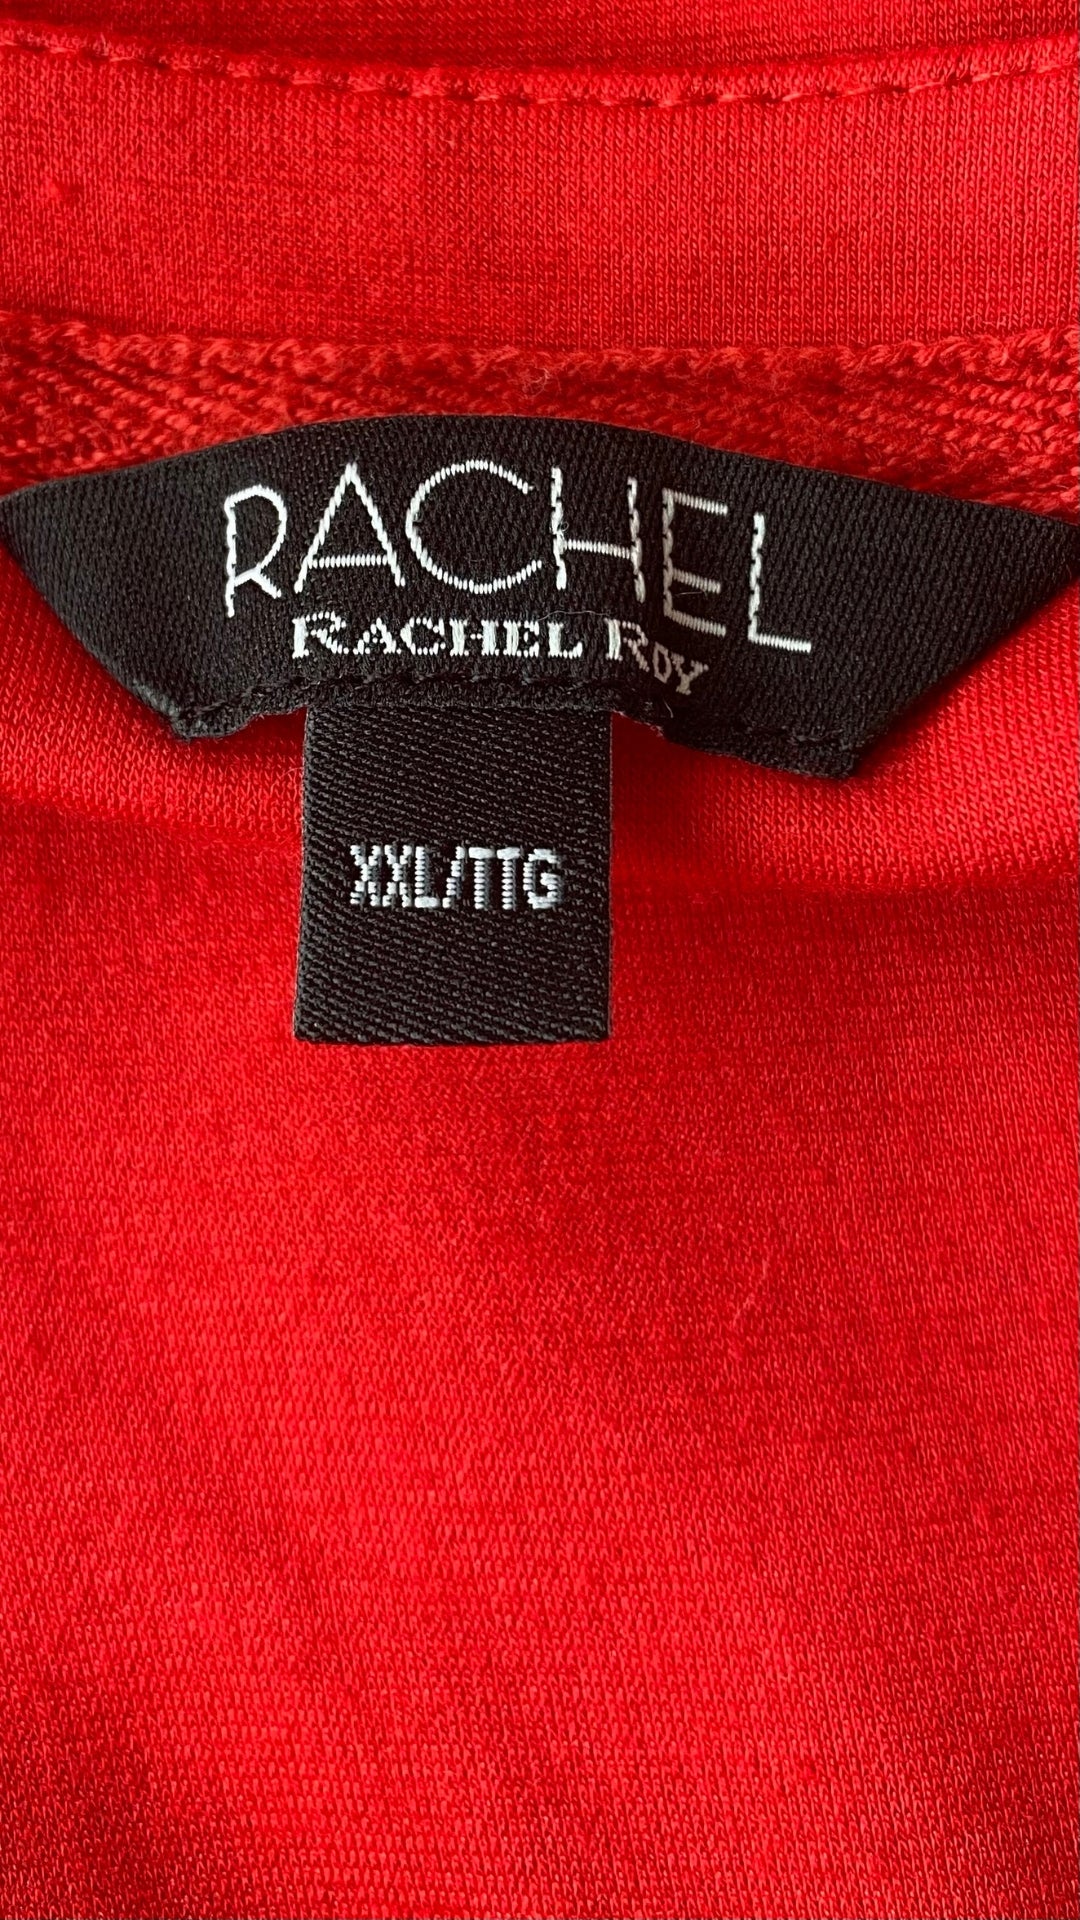 Robe en jersey extensible rouge avec poches Rachel Rachel Roy, taille xxl. Vue de l'étiquette de marque et taille.